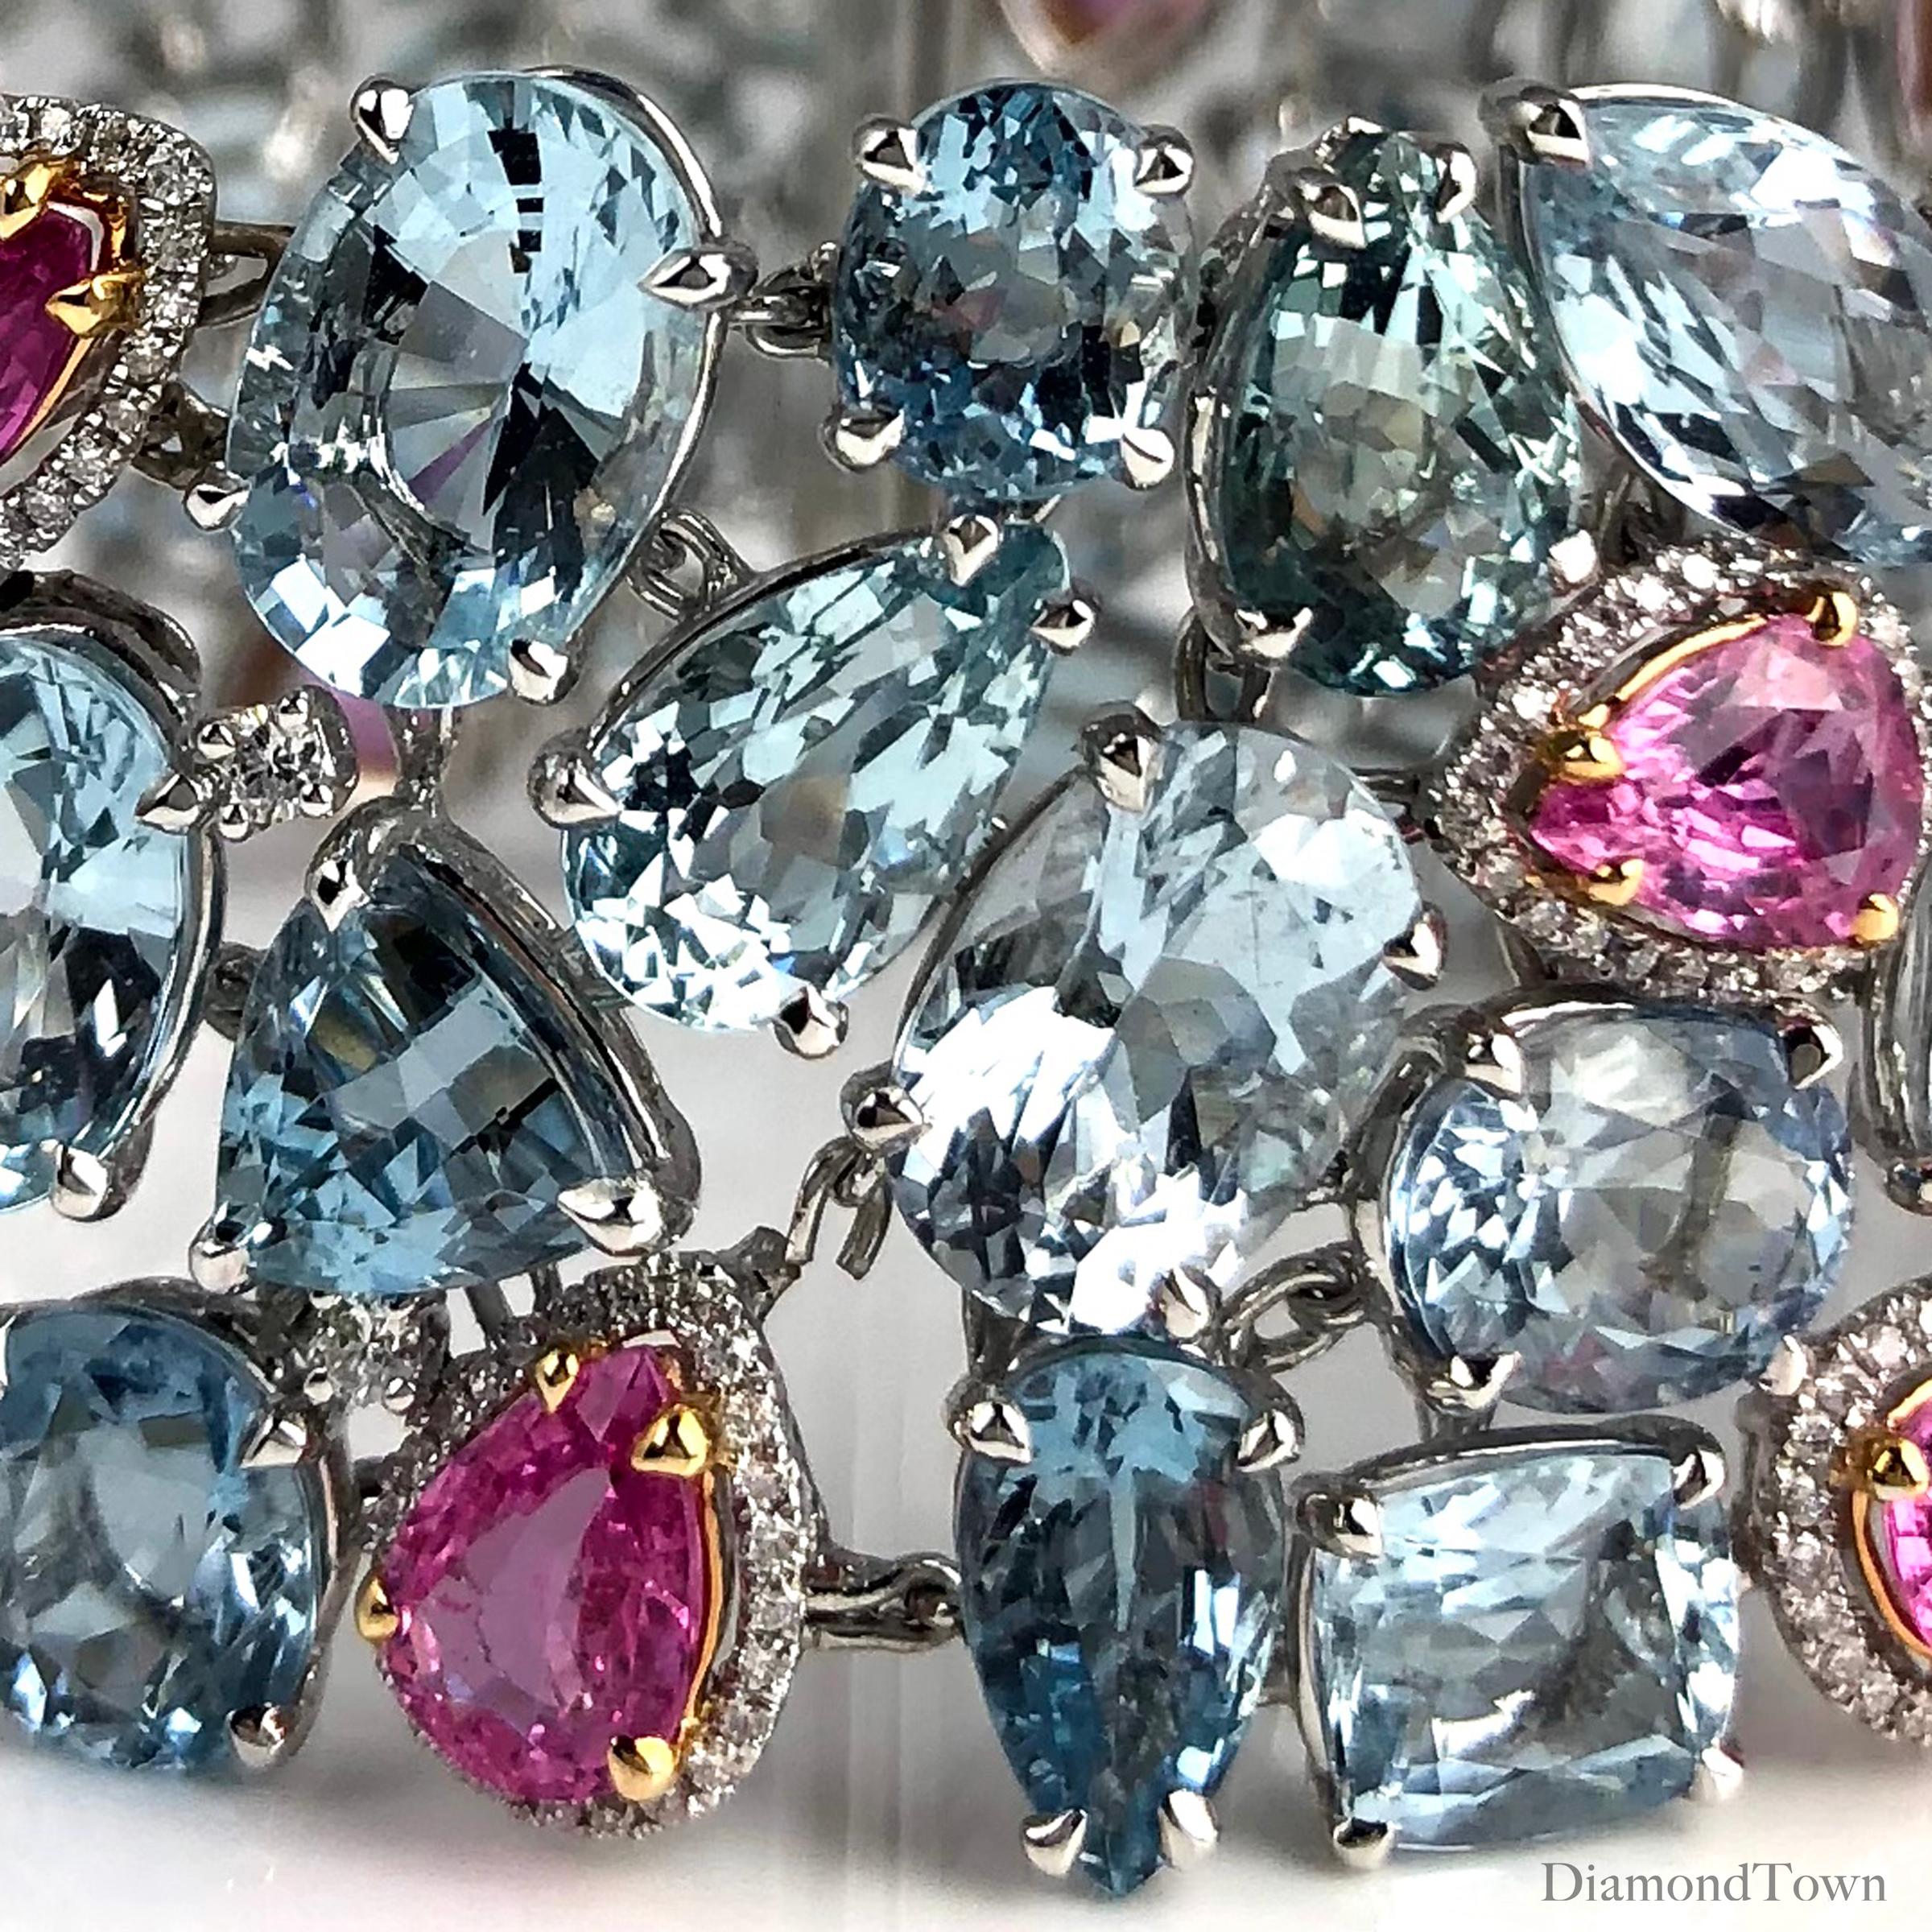 Dieses wunderschöne Armband besteht aus GIA-zertifizierten Aquamarinen und rosa Saphiren, die mit Diamanten akzentuiert sind. Die Steine sind filigran in einer flexiblen Manschettenfassung angeordnet. Eine farbenprächtige Ergänzung für jede